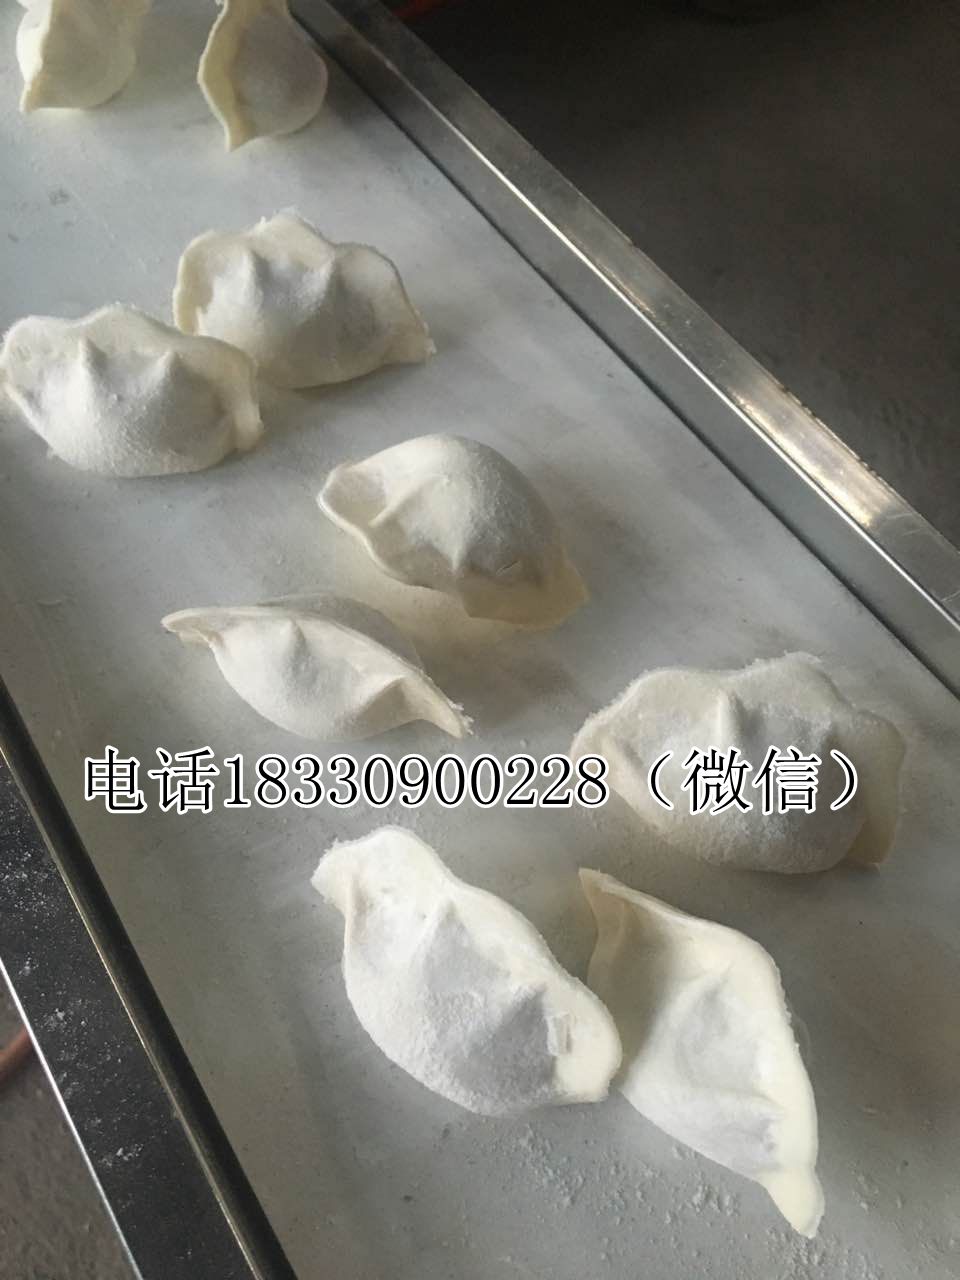 邢台市包饺子机 饺子机器 小型饺子机厂家包饺子机 饺子机器 小型饺子机